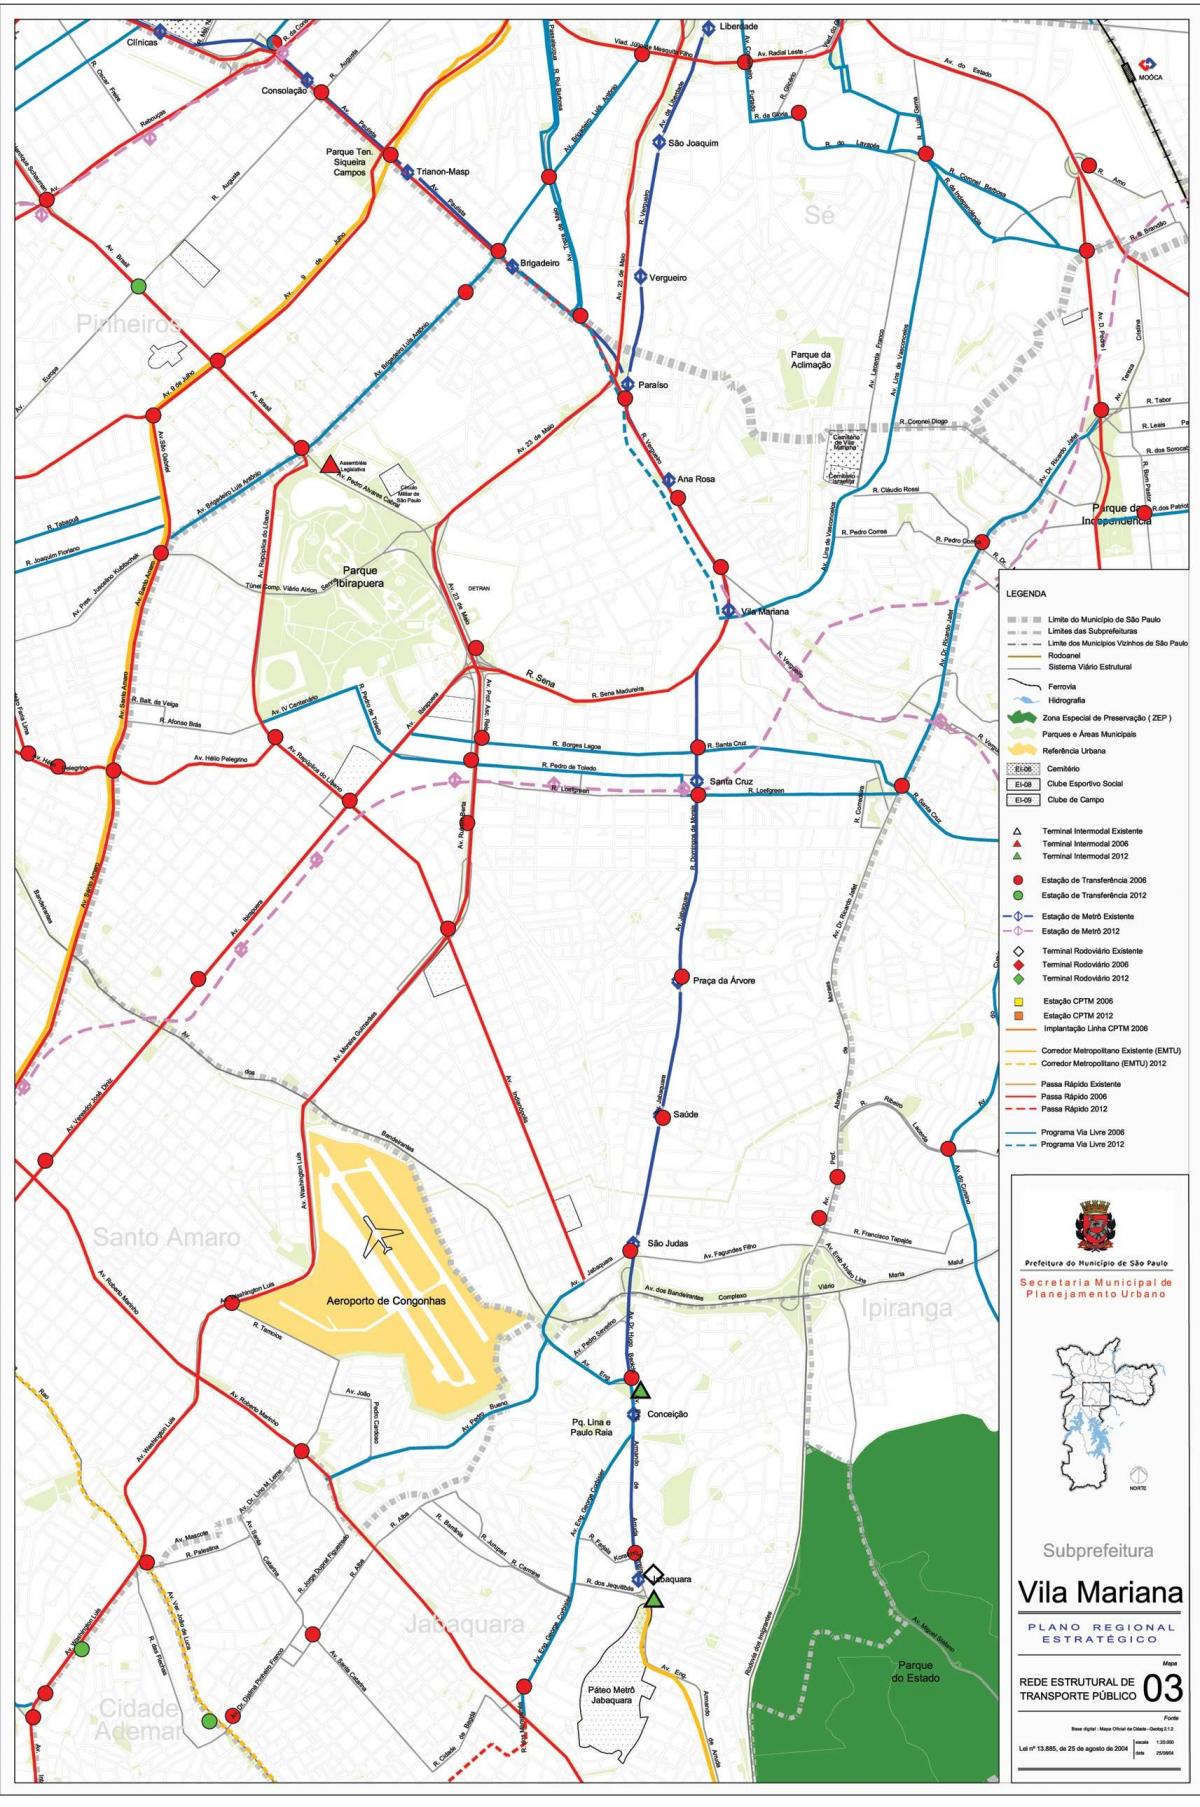 Mapa da Vila Mariana São Paulo - transportes Públicos